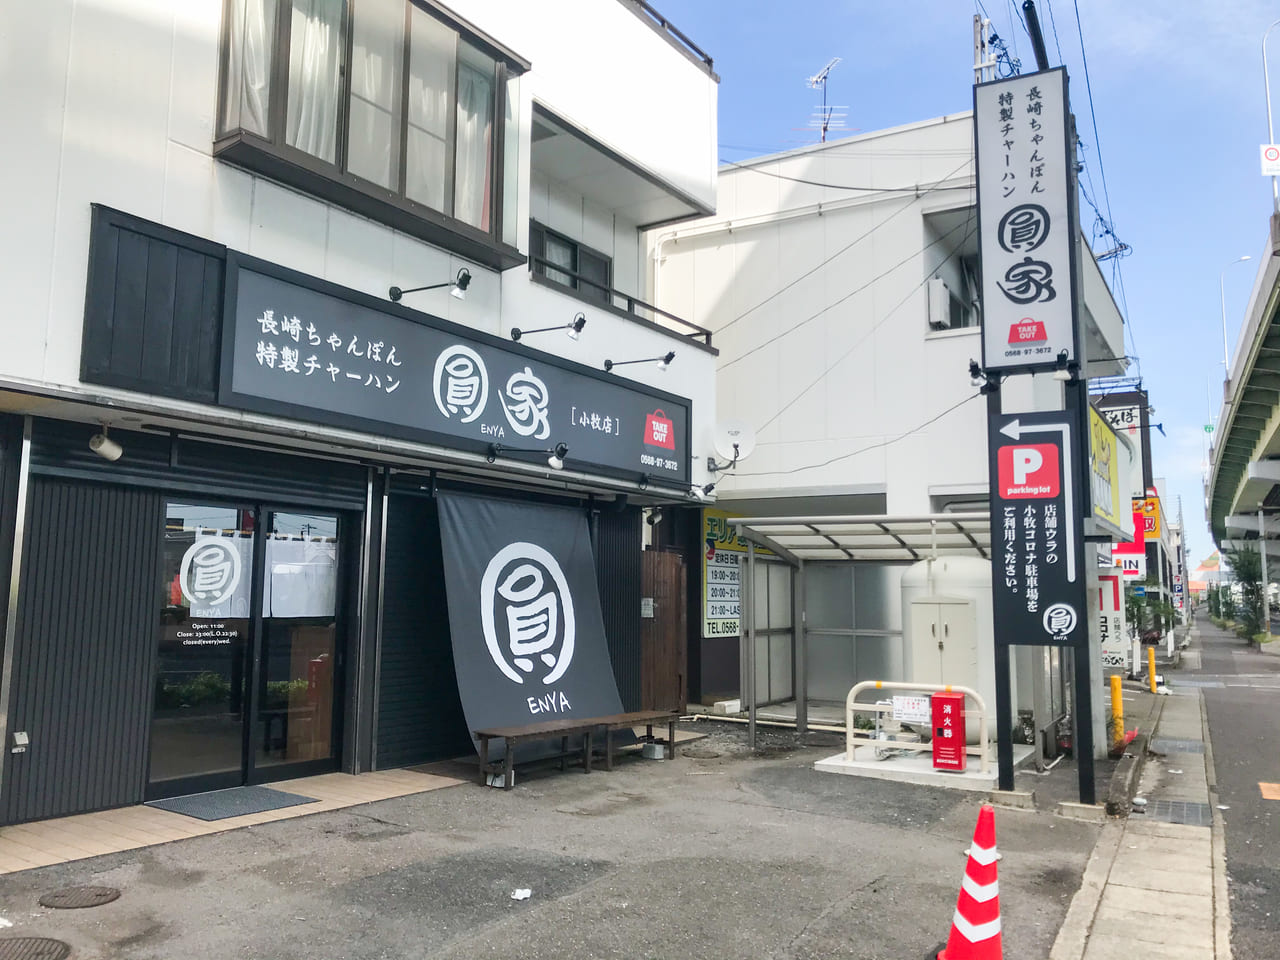 新しくオープンした長崎ちゃんぽんと特製チャーハンのお店「圓家小牧店」